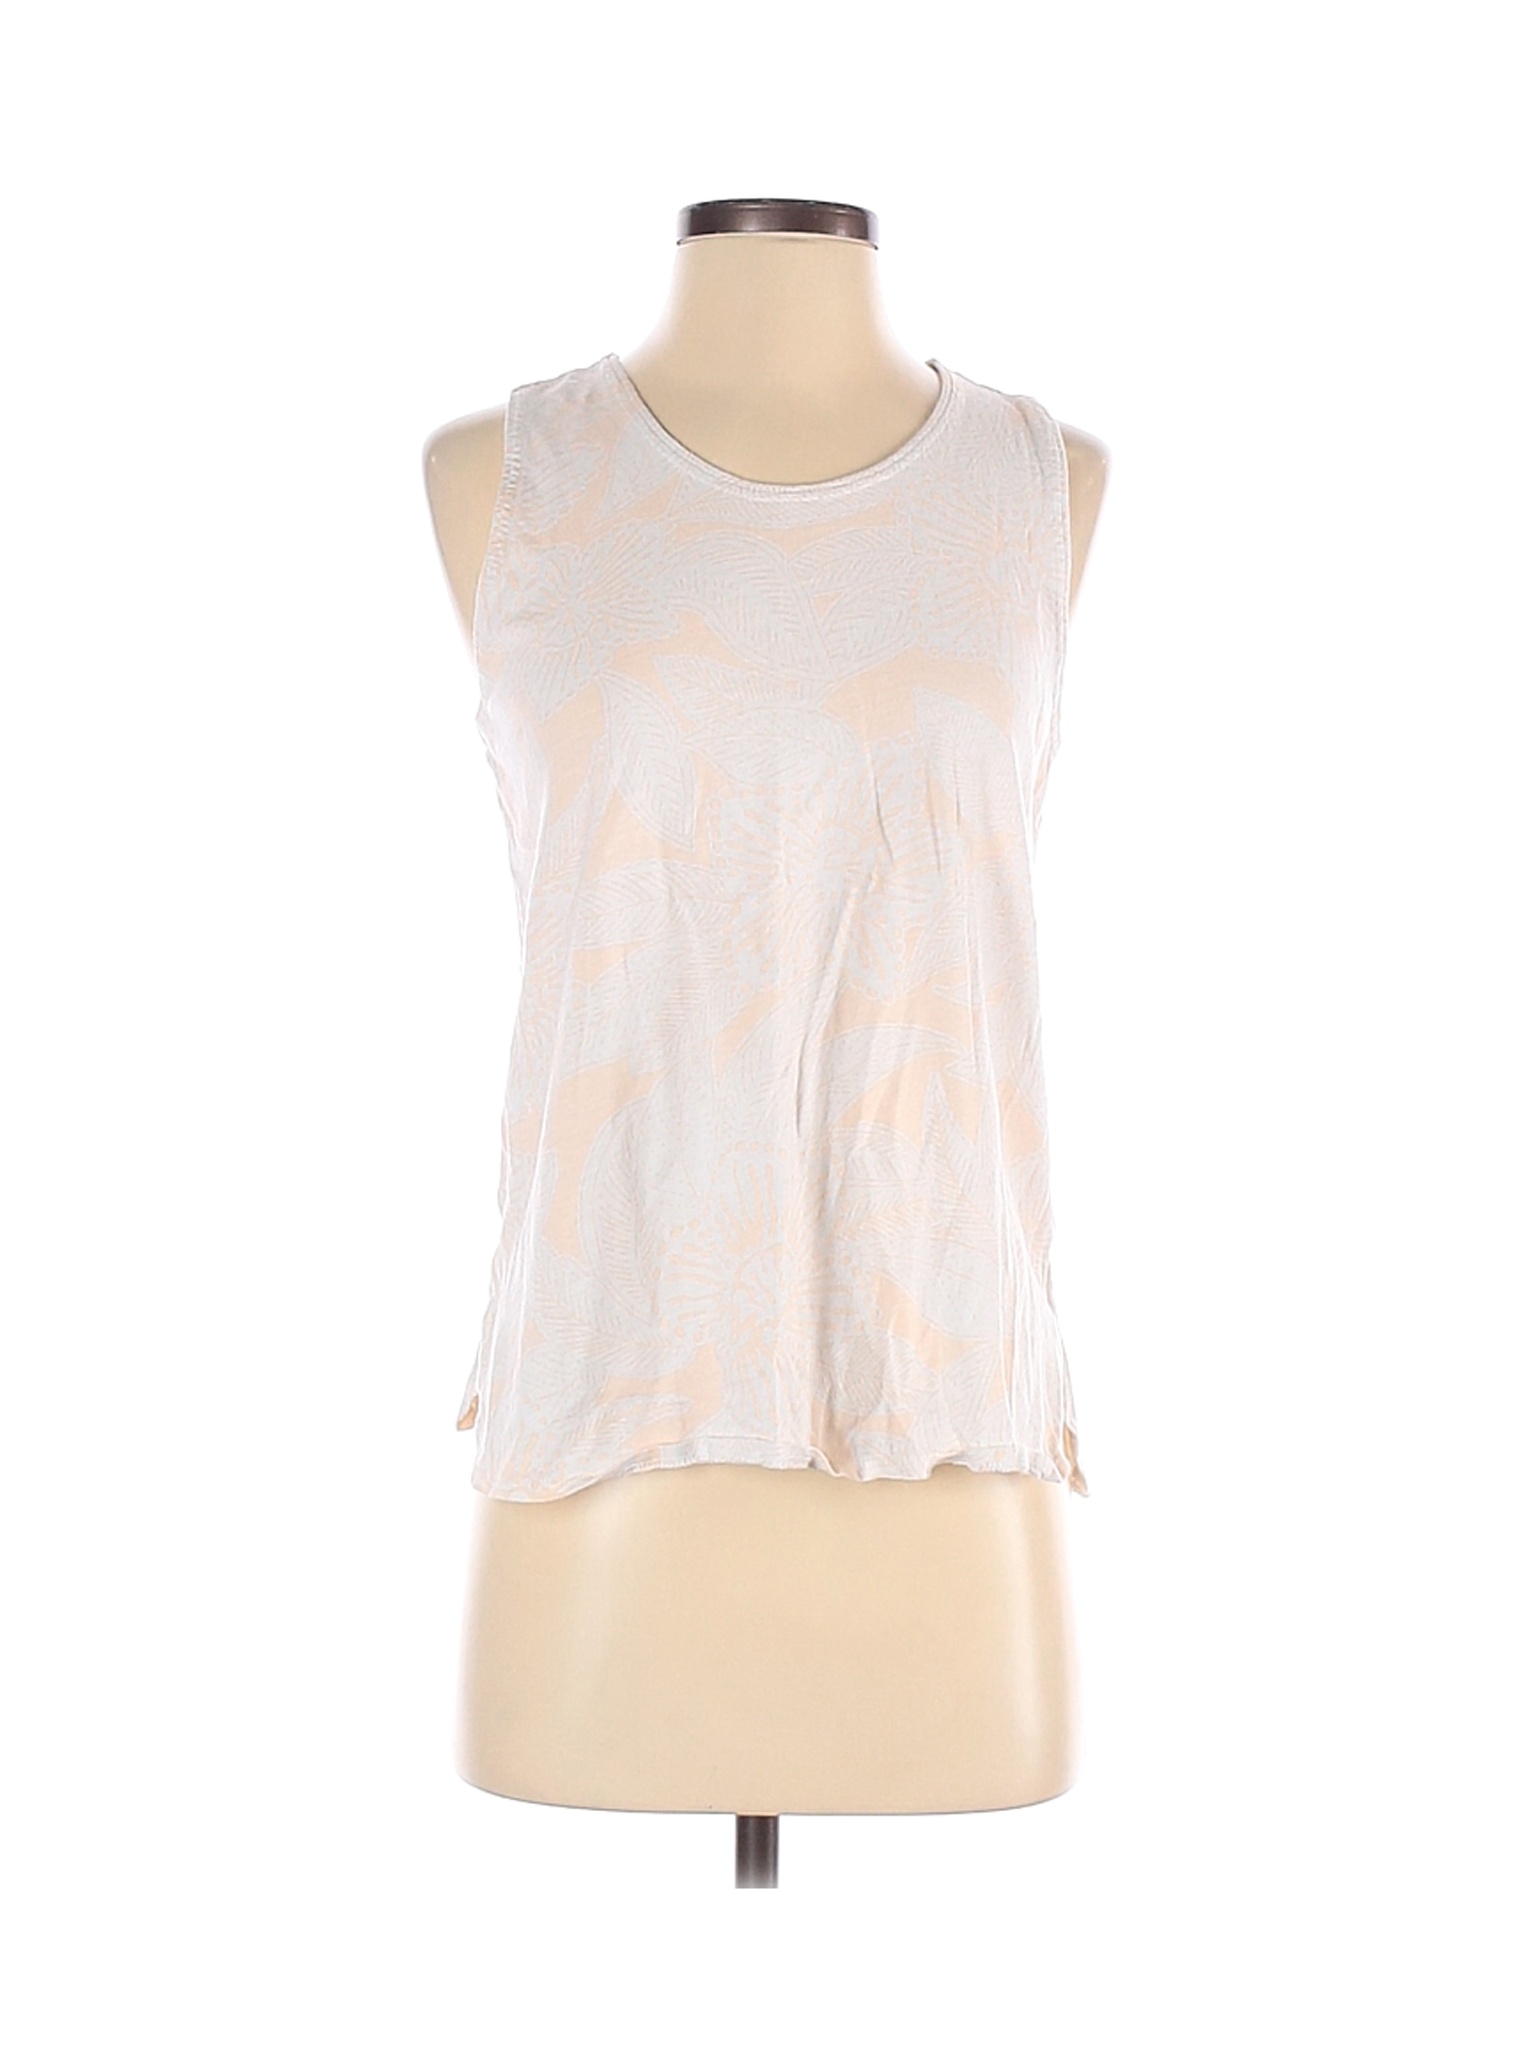 J.Crew Factory Store Women Ivory Sleeveless T-Shirt S | eBay